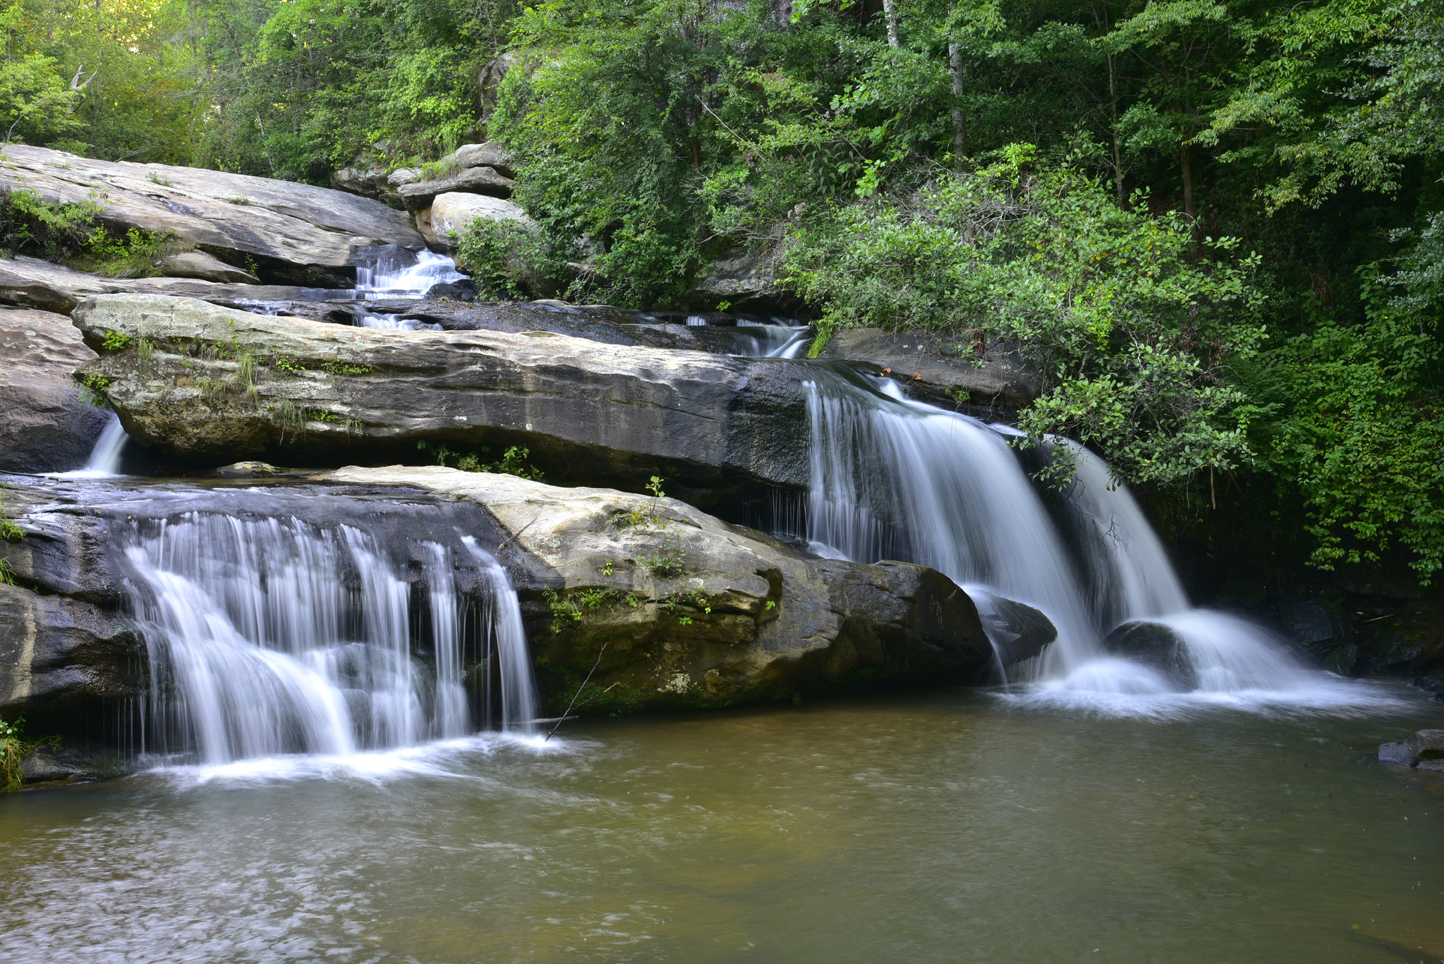 Chau-Ram Falls  -  Chau-Ram County Park, Oconee County, South Carolina